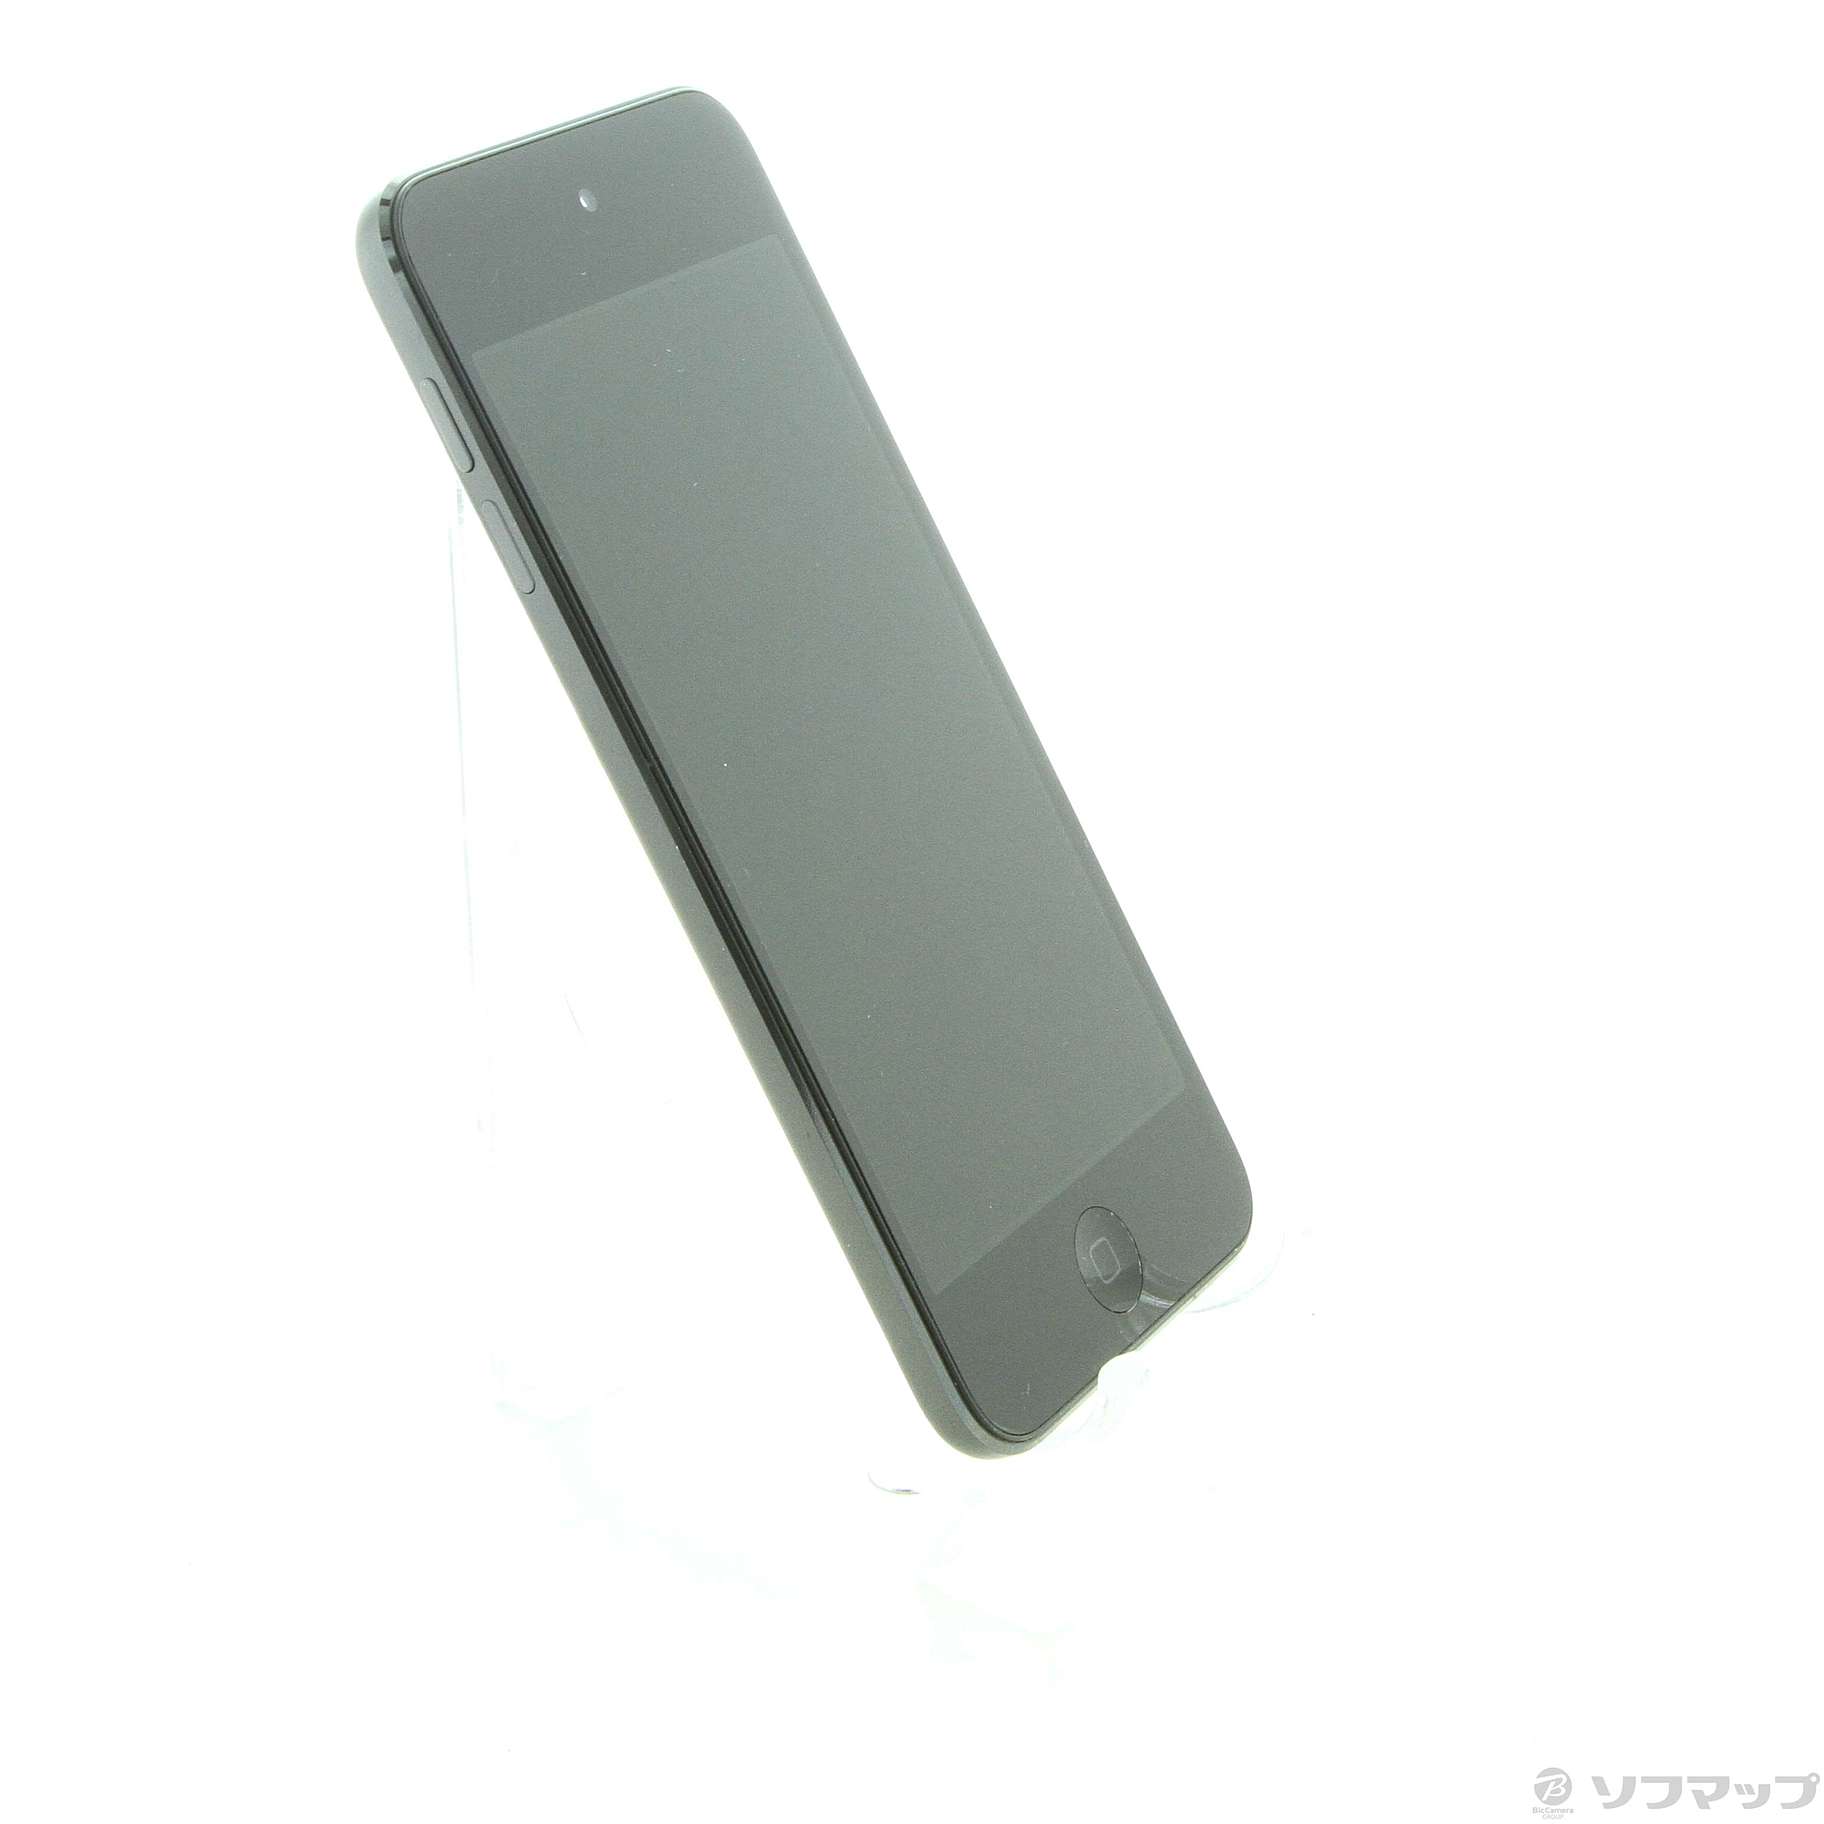 期間限定] iPod touch 6世代 32GB スペースグレー-